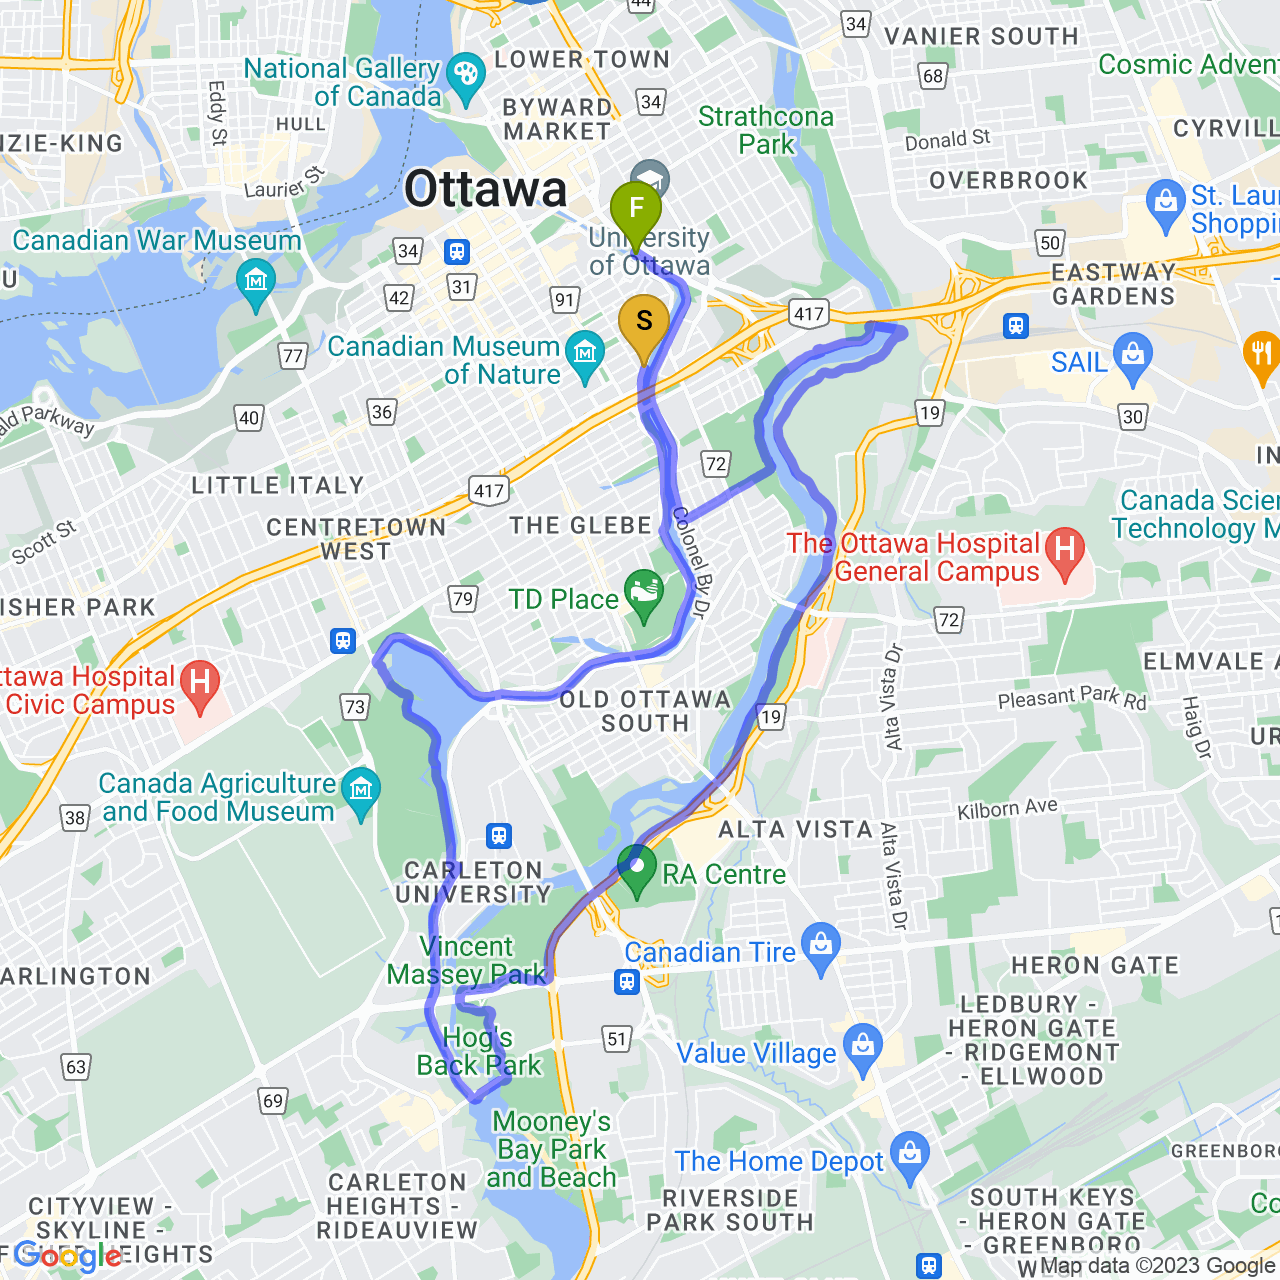 map of Evening -R-u-n- Ride